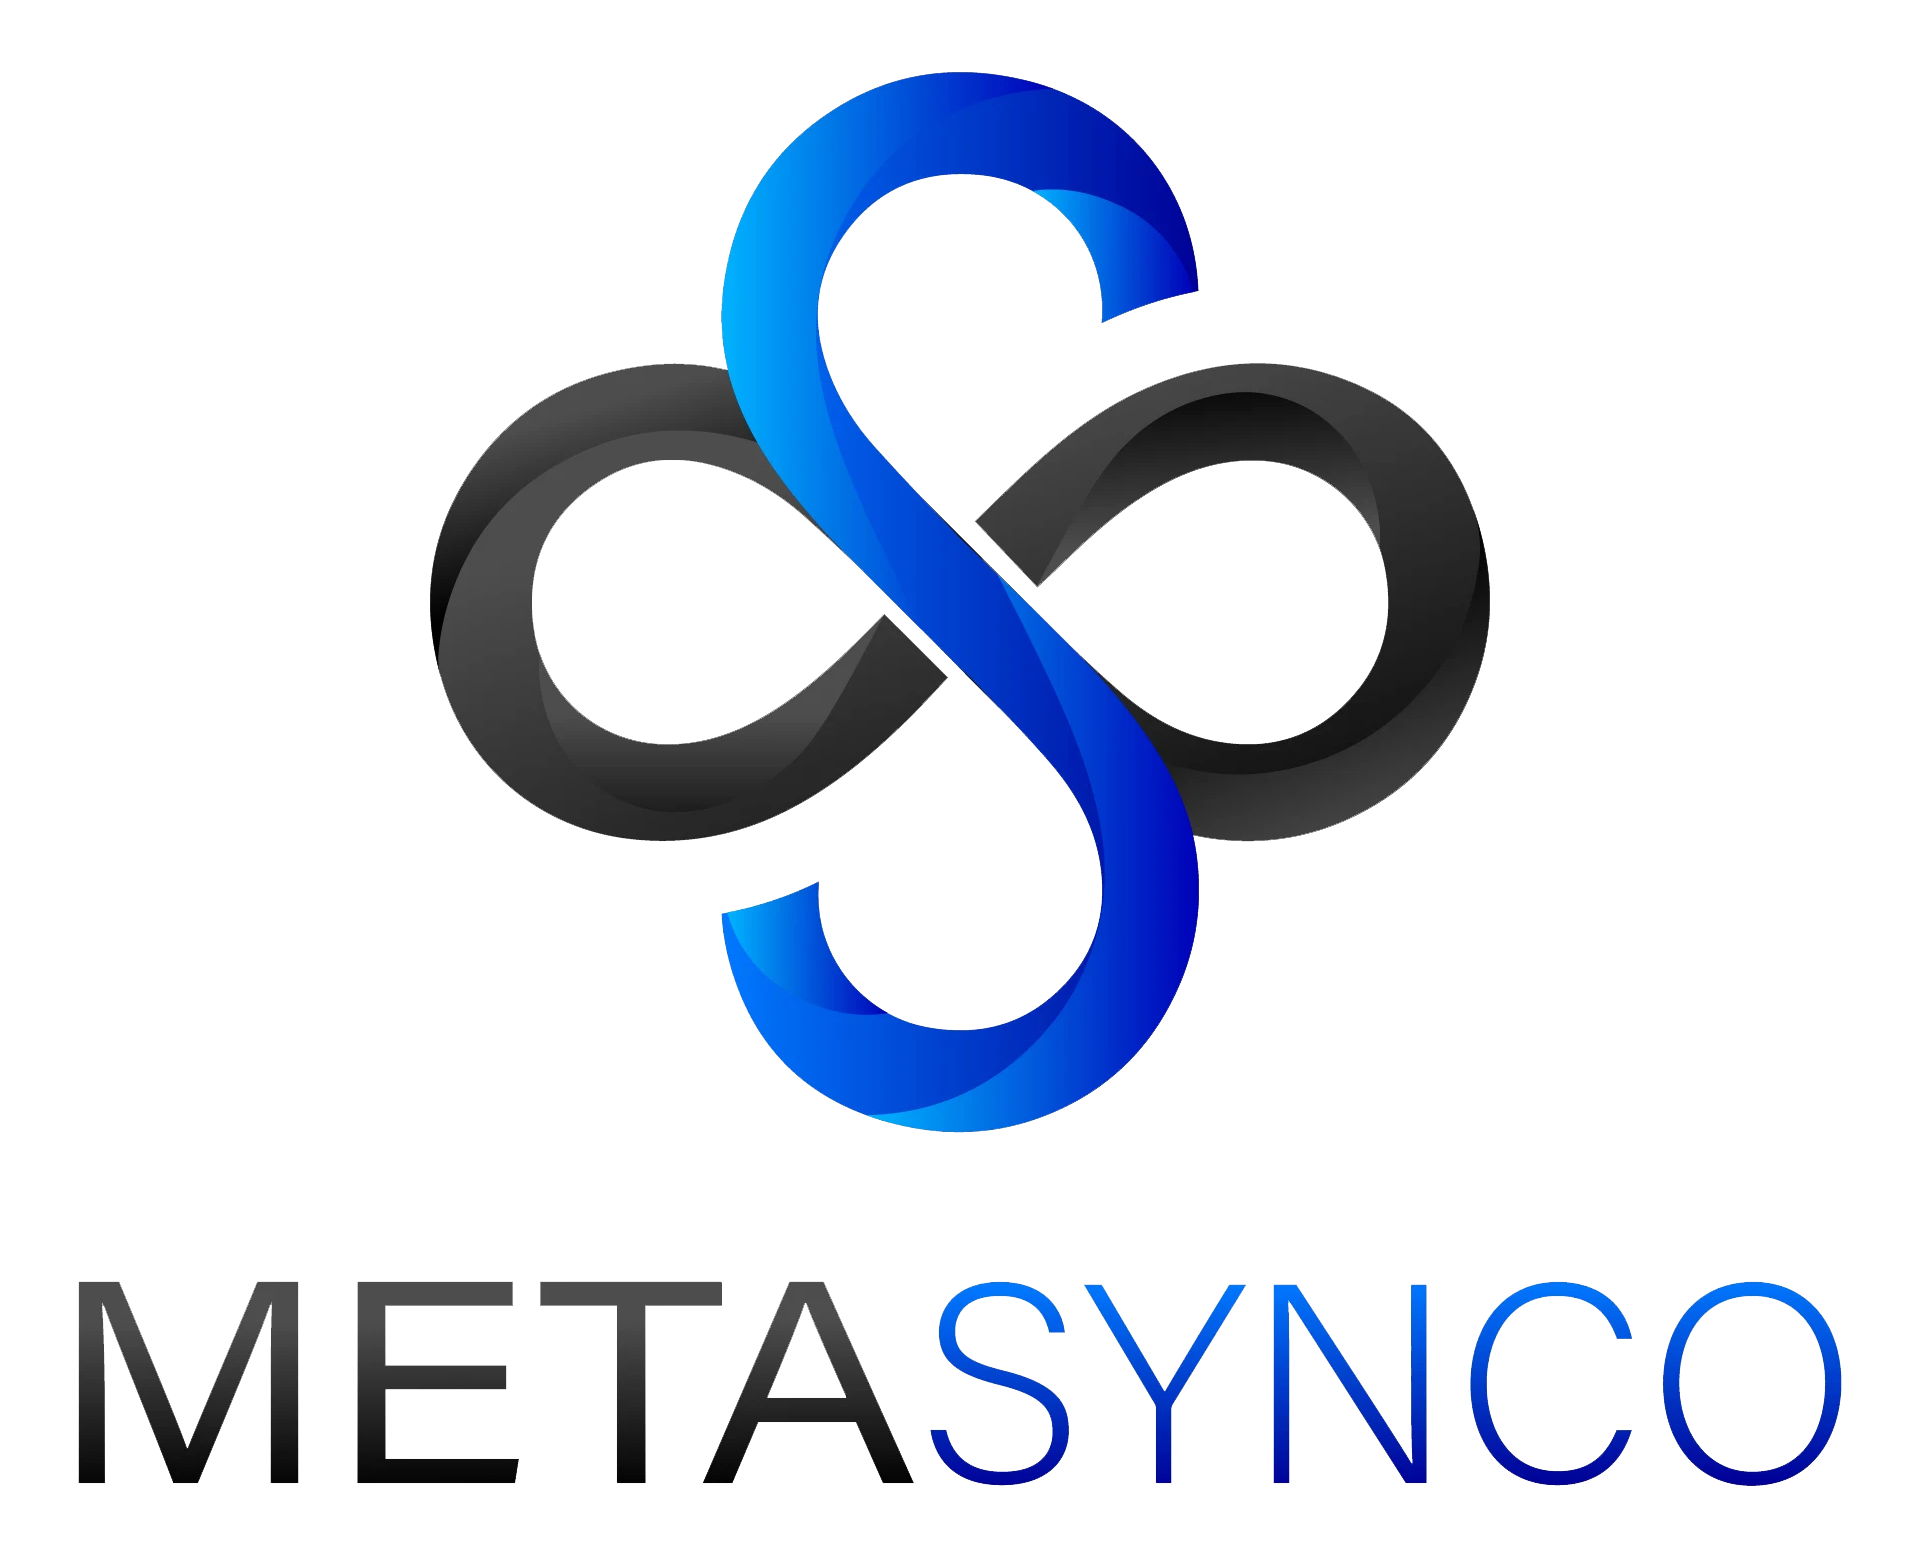 A logo of MetaSynco